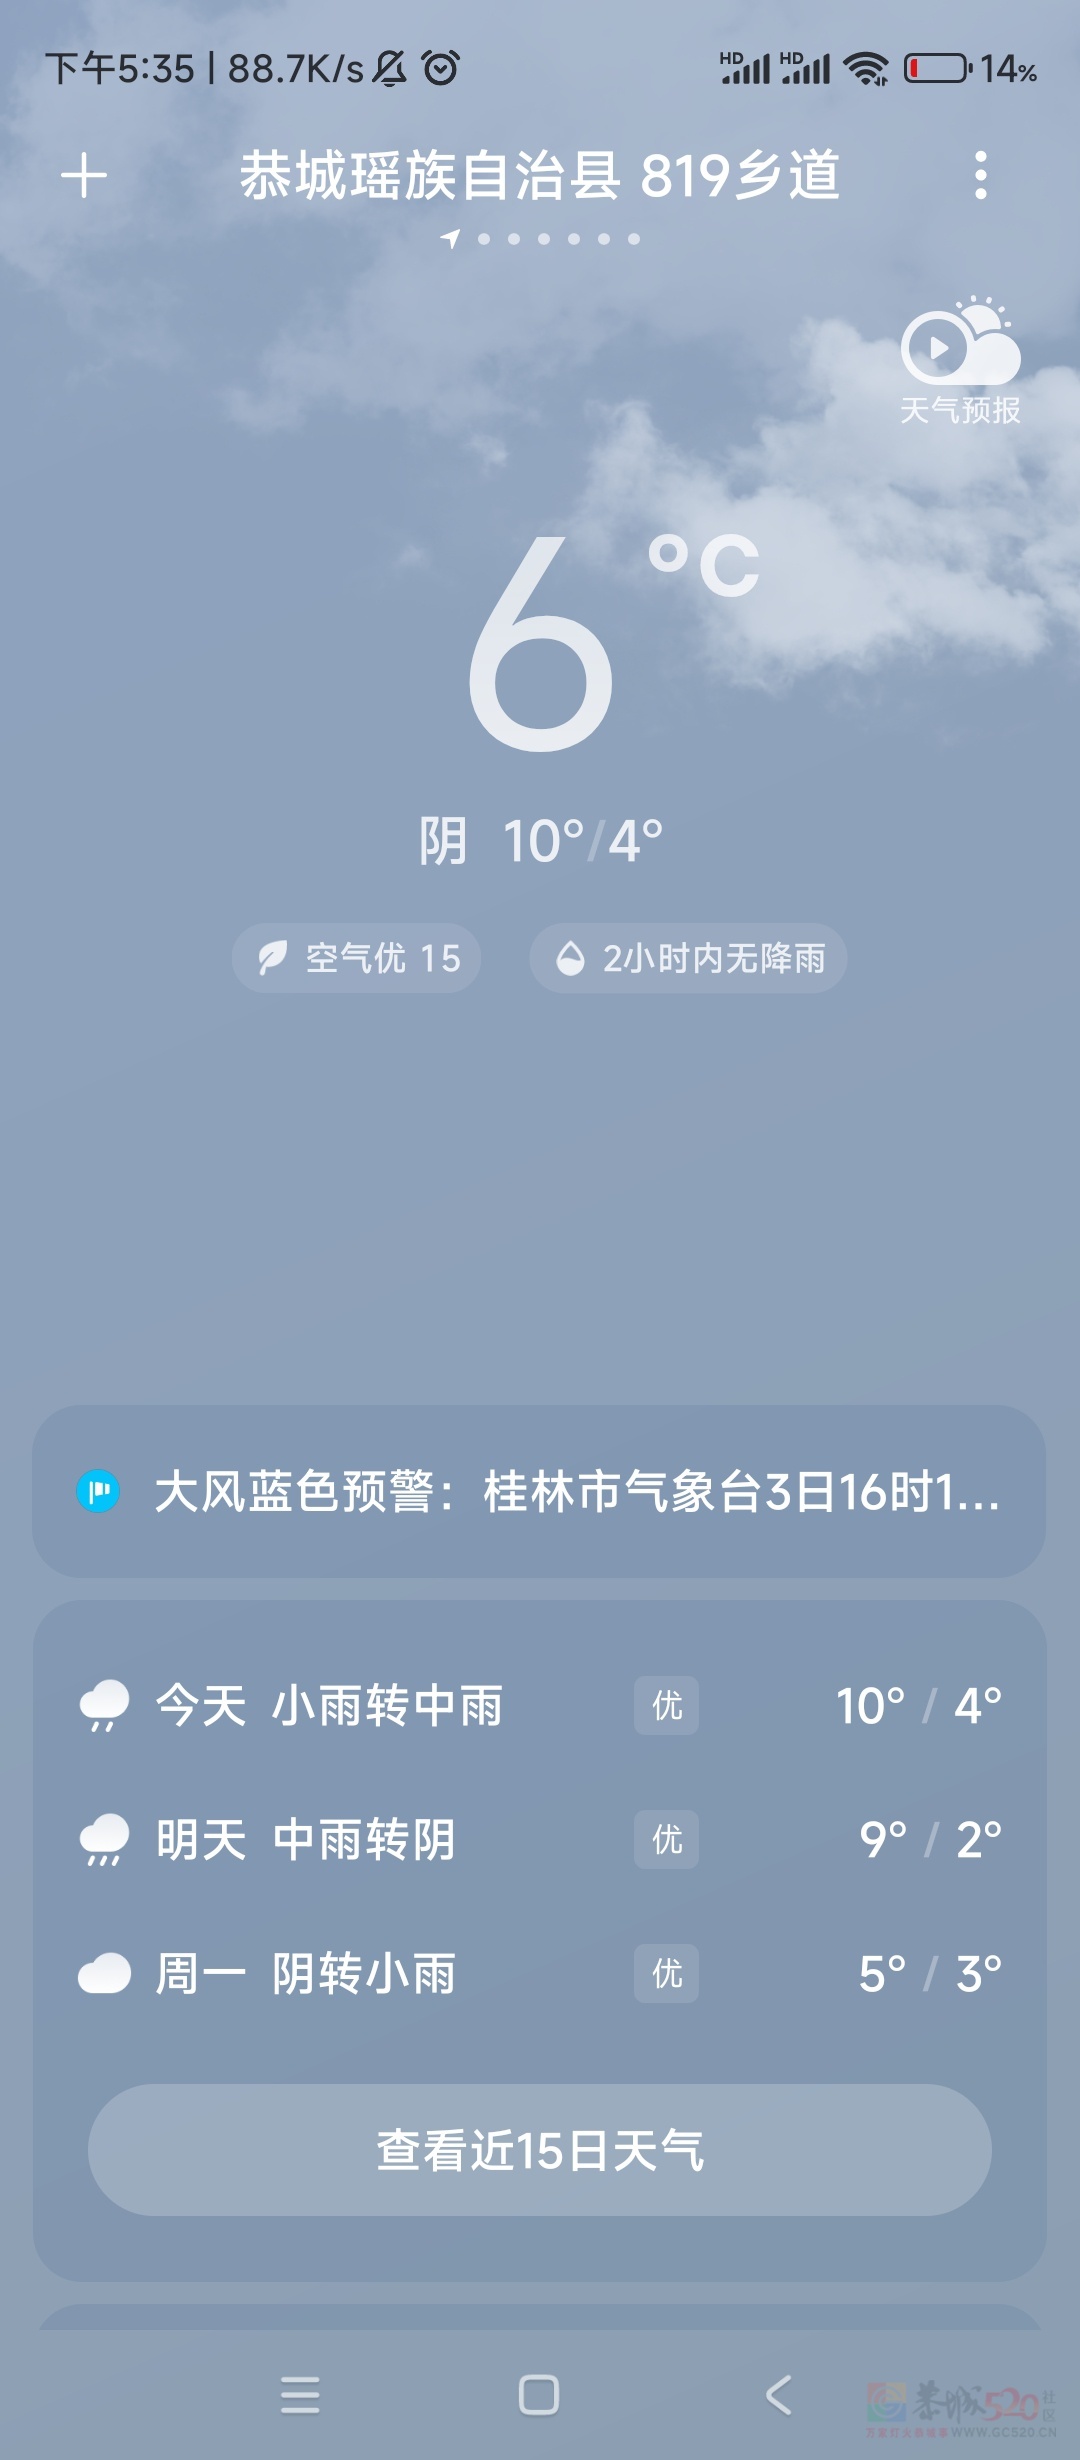 太冷了，还没有回家的都不要回来了。
 
刚从广东回来。马上要回广东了，这个太冷了340 / 作者:太冷了 / 帖子ID:313468